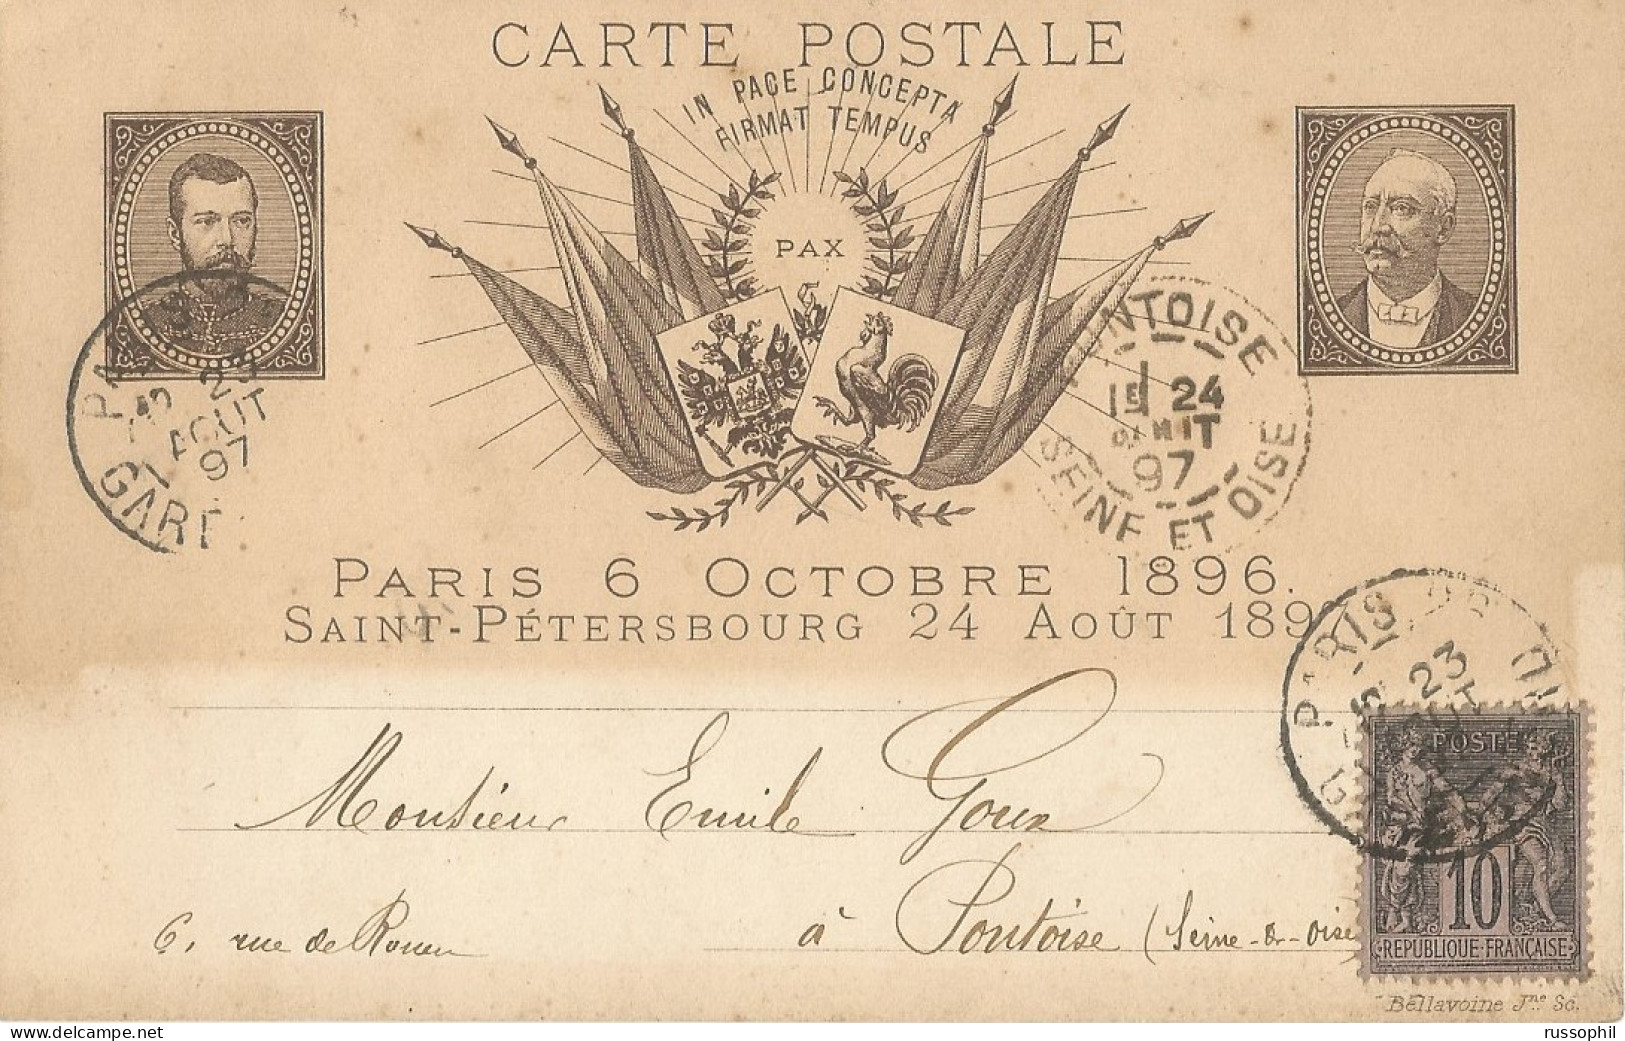 FRANCO RUSSIAN ALLIANCE - PARIS 6 OCTOBRE 1896 SAINT PETERSBOURG 24 AOUT 1897 - ED BELLAVOINE - 1897 - Events